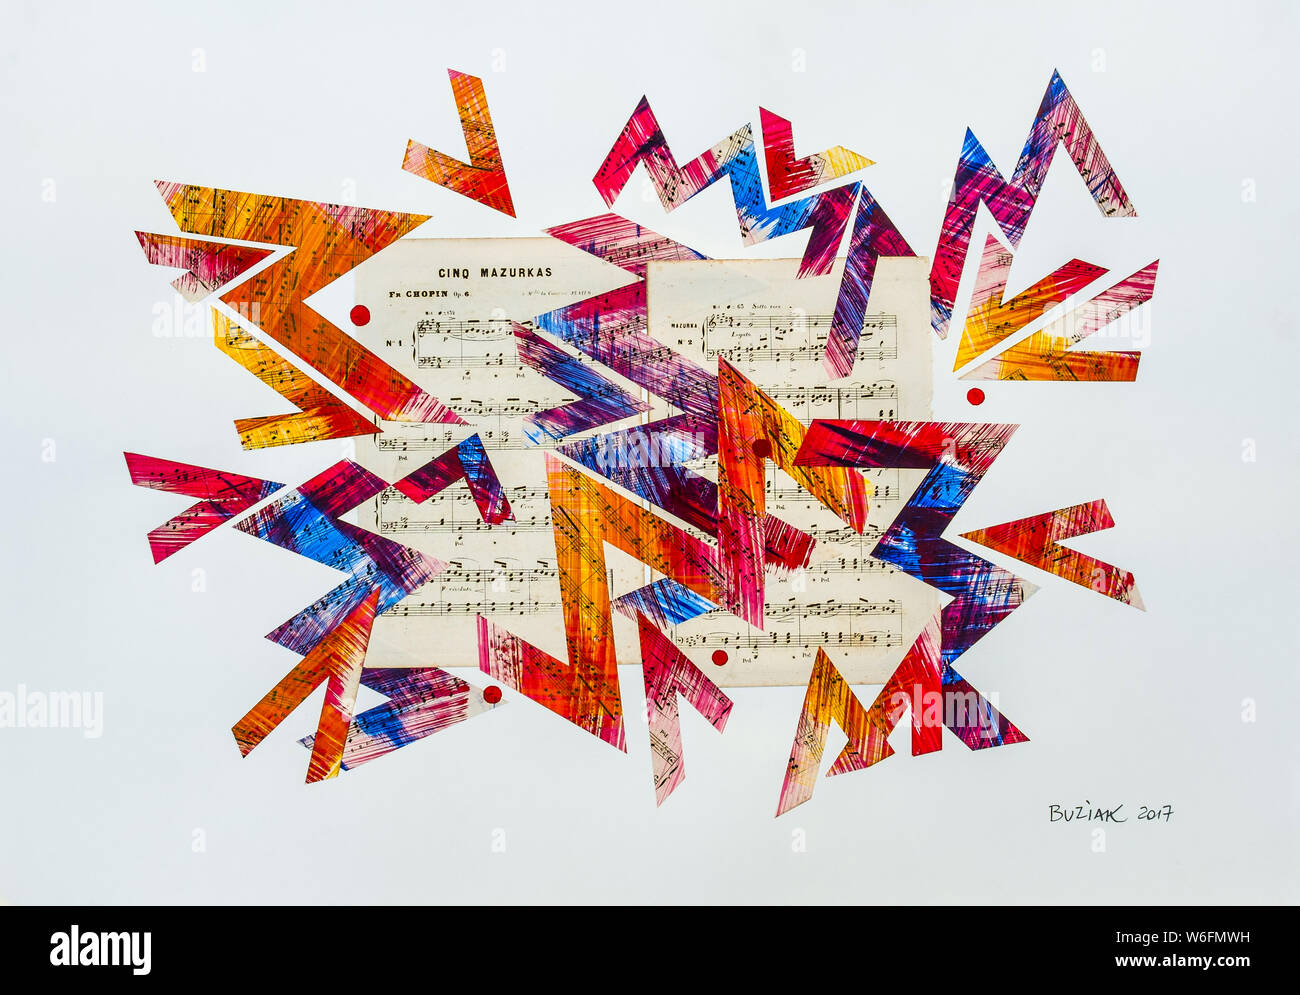 Mixed-media abstract artwork by Ed Buziak. Stock Photo